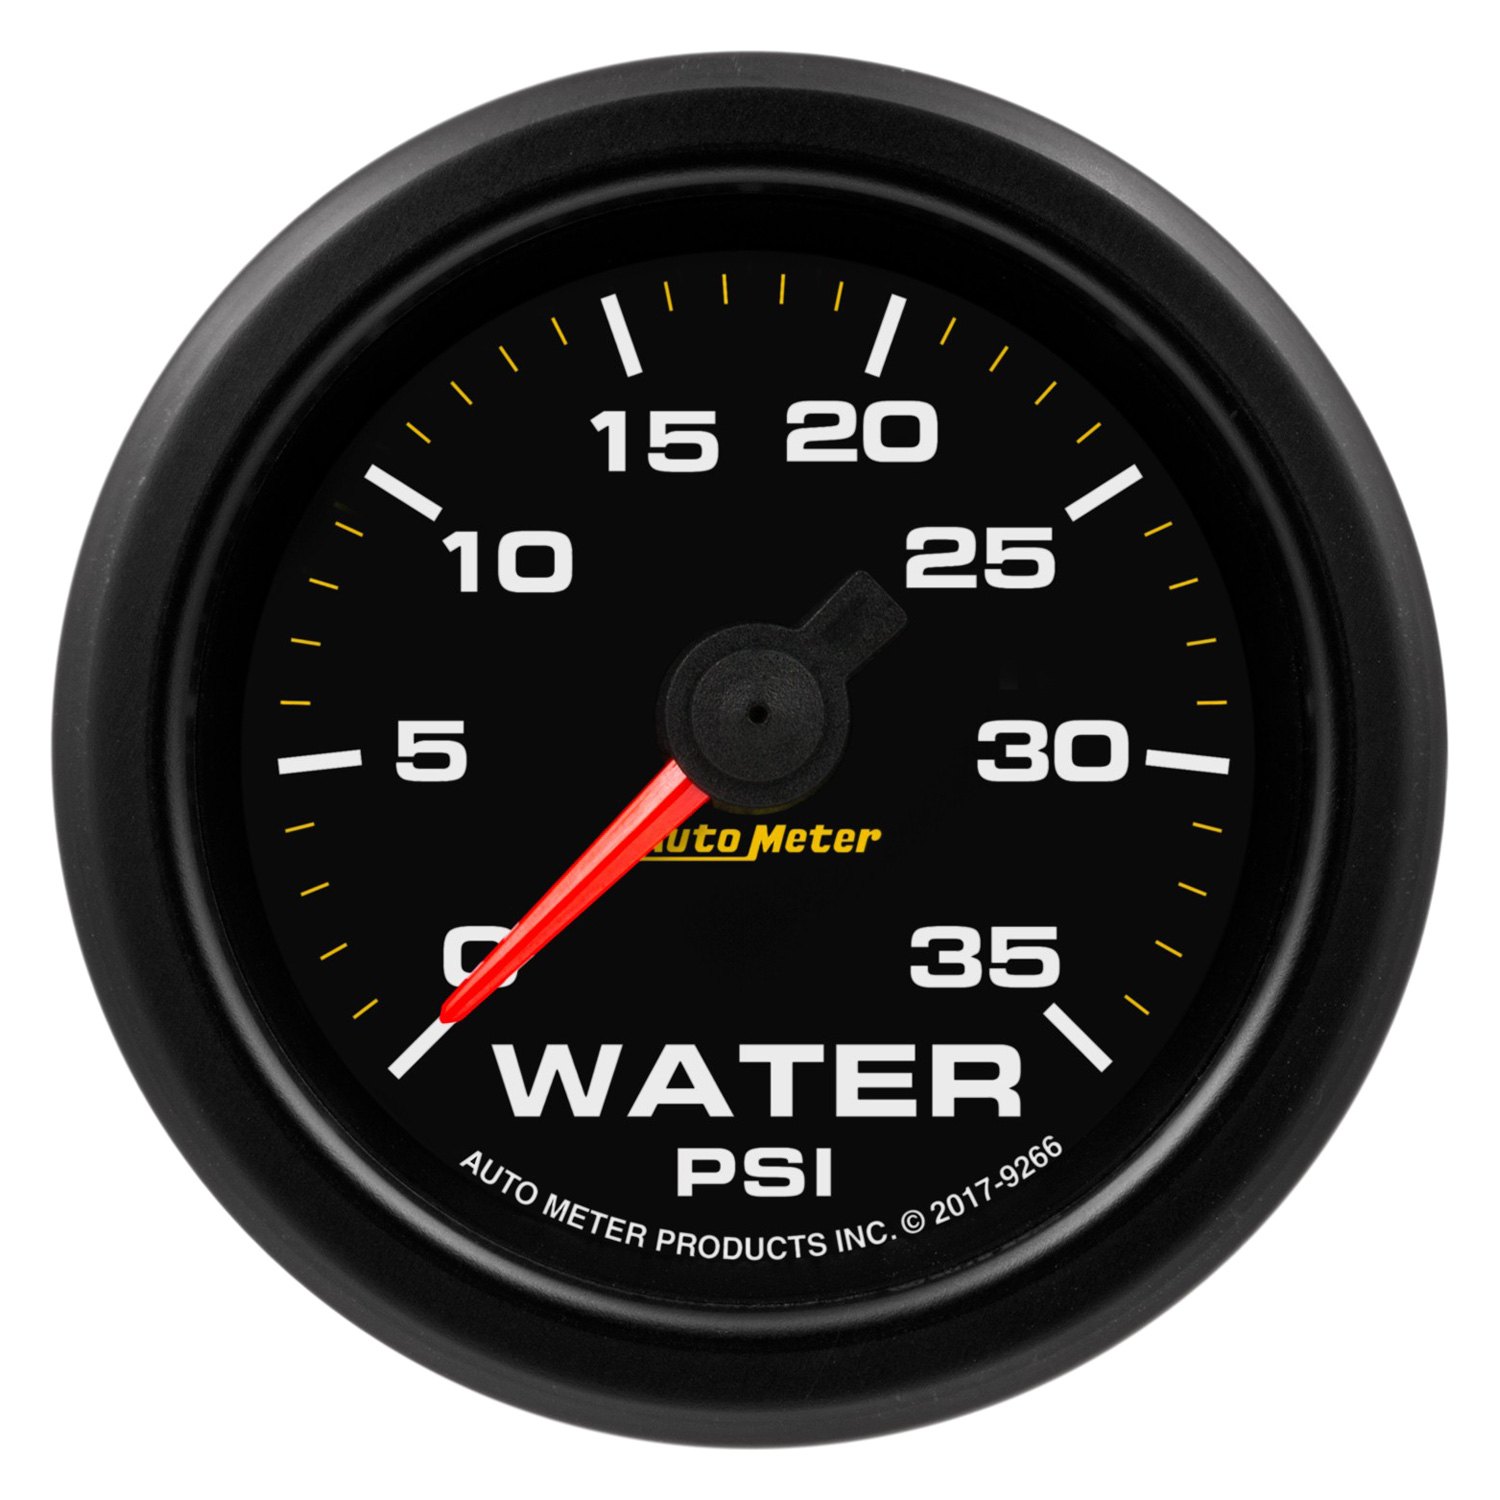 Fuel Meter. Autometer. Auto Gauge степпер. 675.005.1006 Датчик давления Motormeter. 35 psi